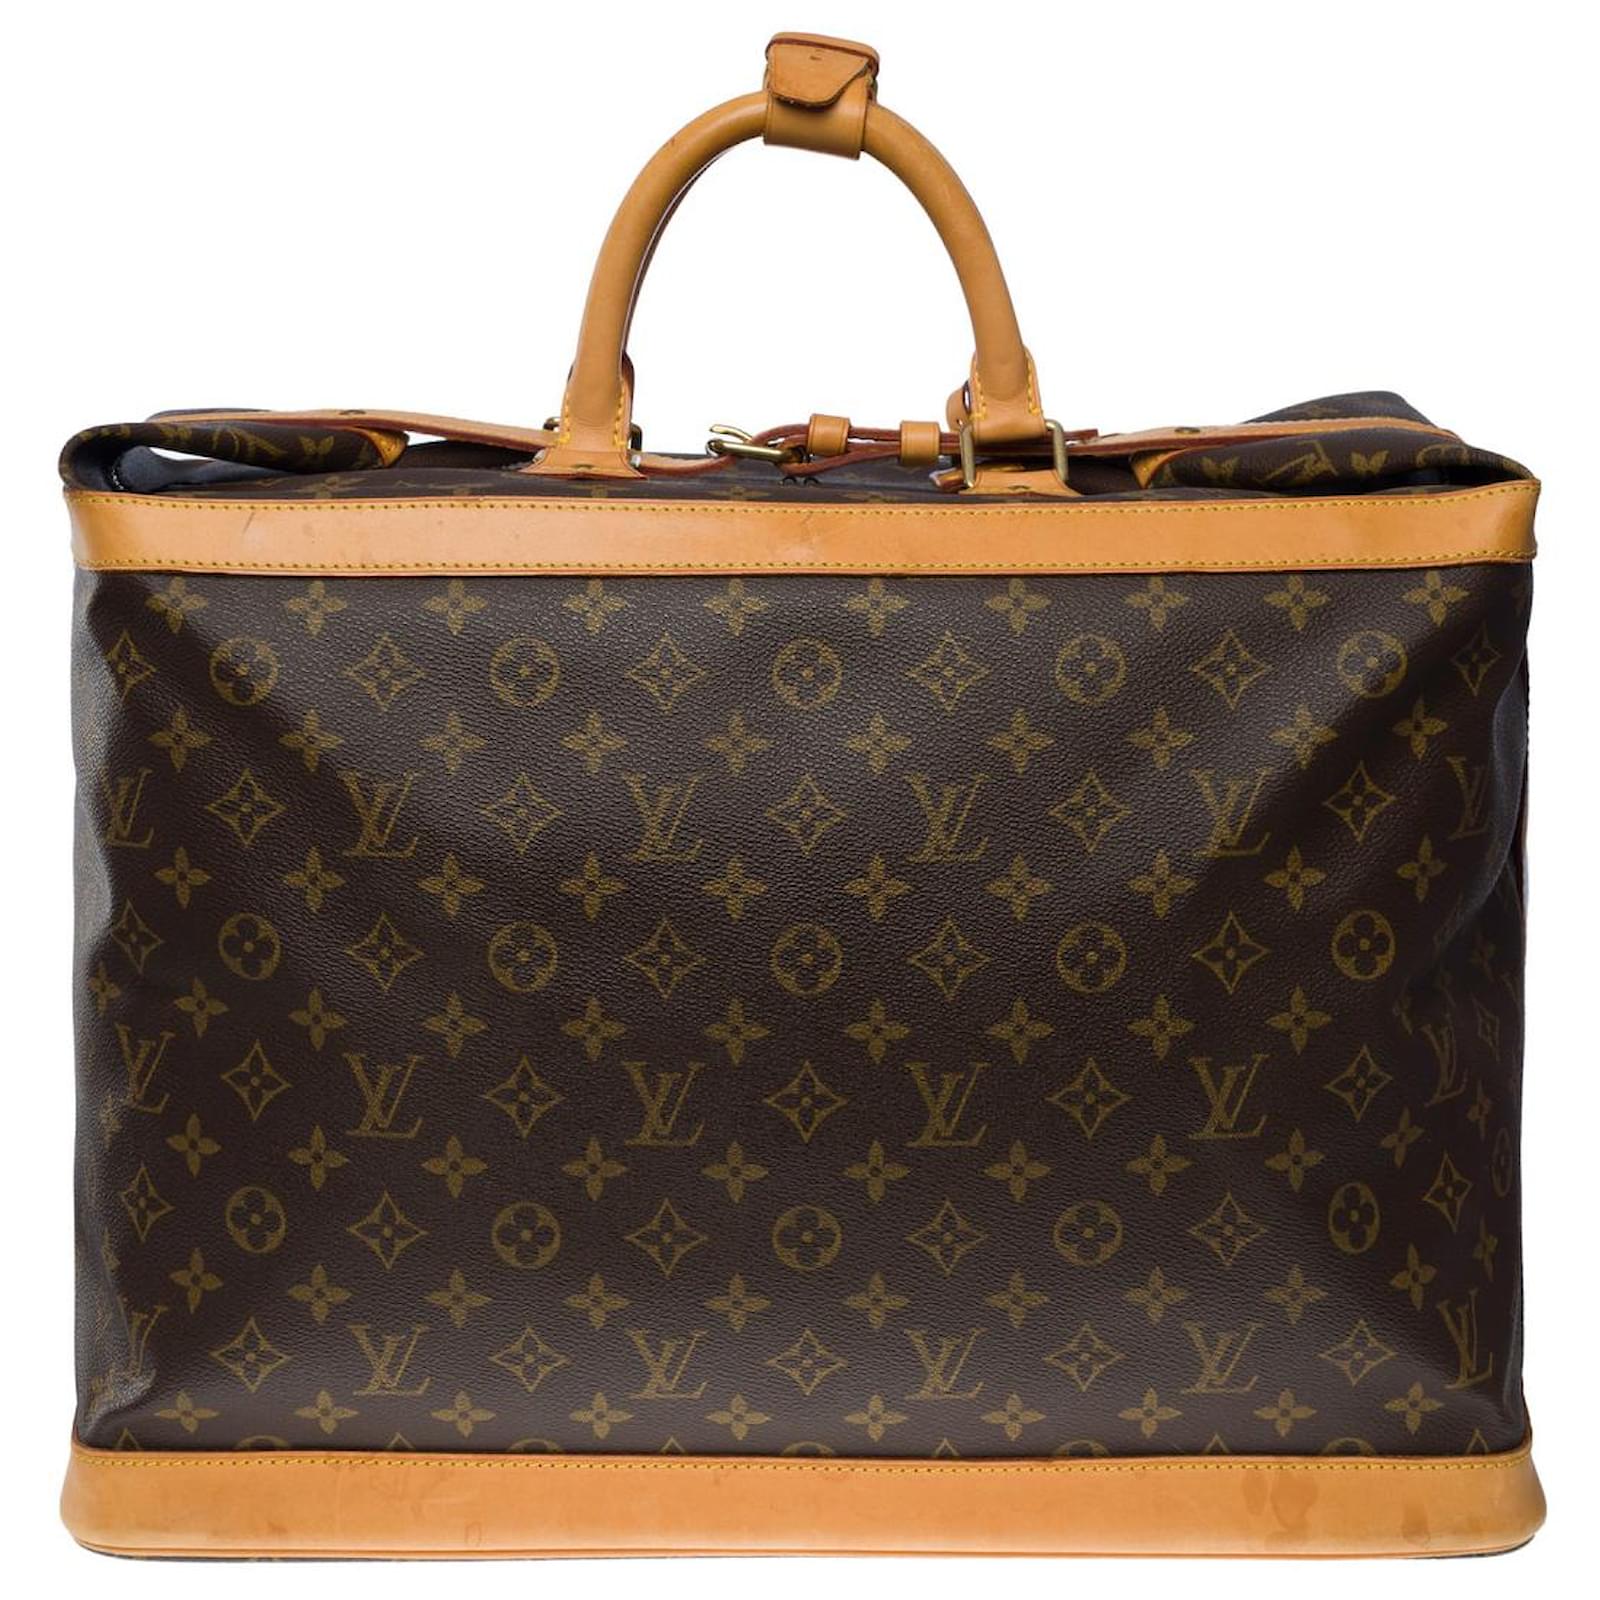 Louis Vuitton cruiser travel bag 45 in brown canvas - 101064 Cloth